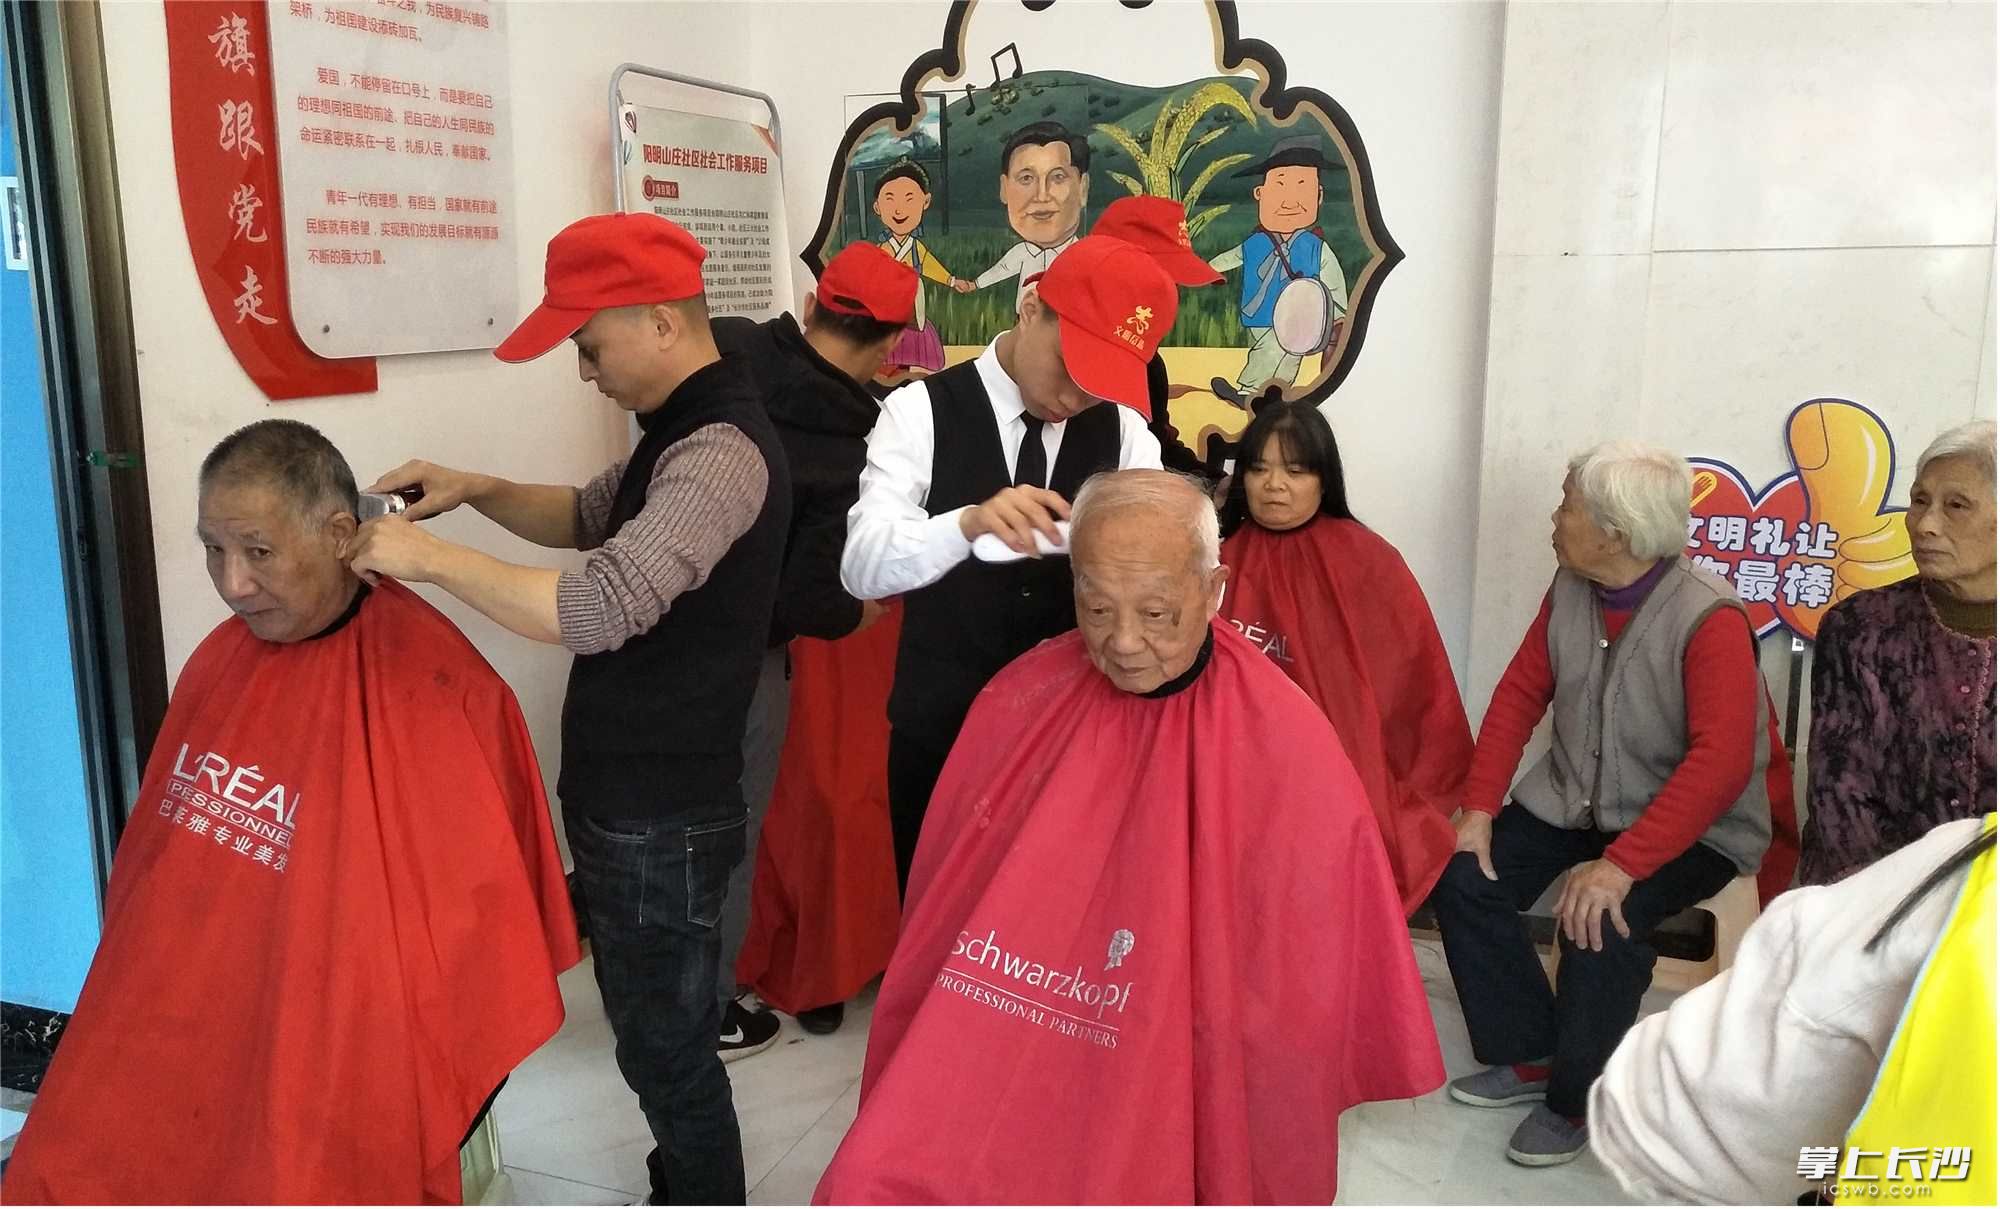 爱心剪发、染发区，老人们耐心排队等候志愿服务。